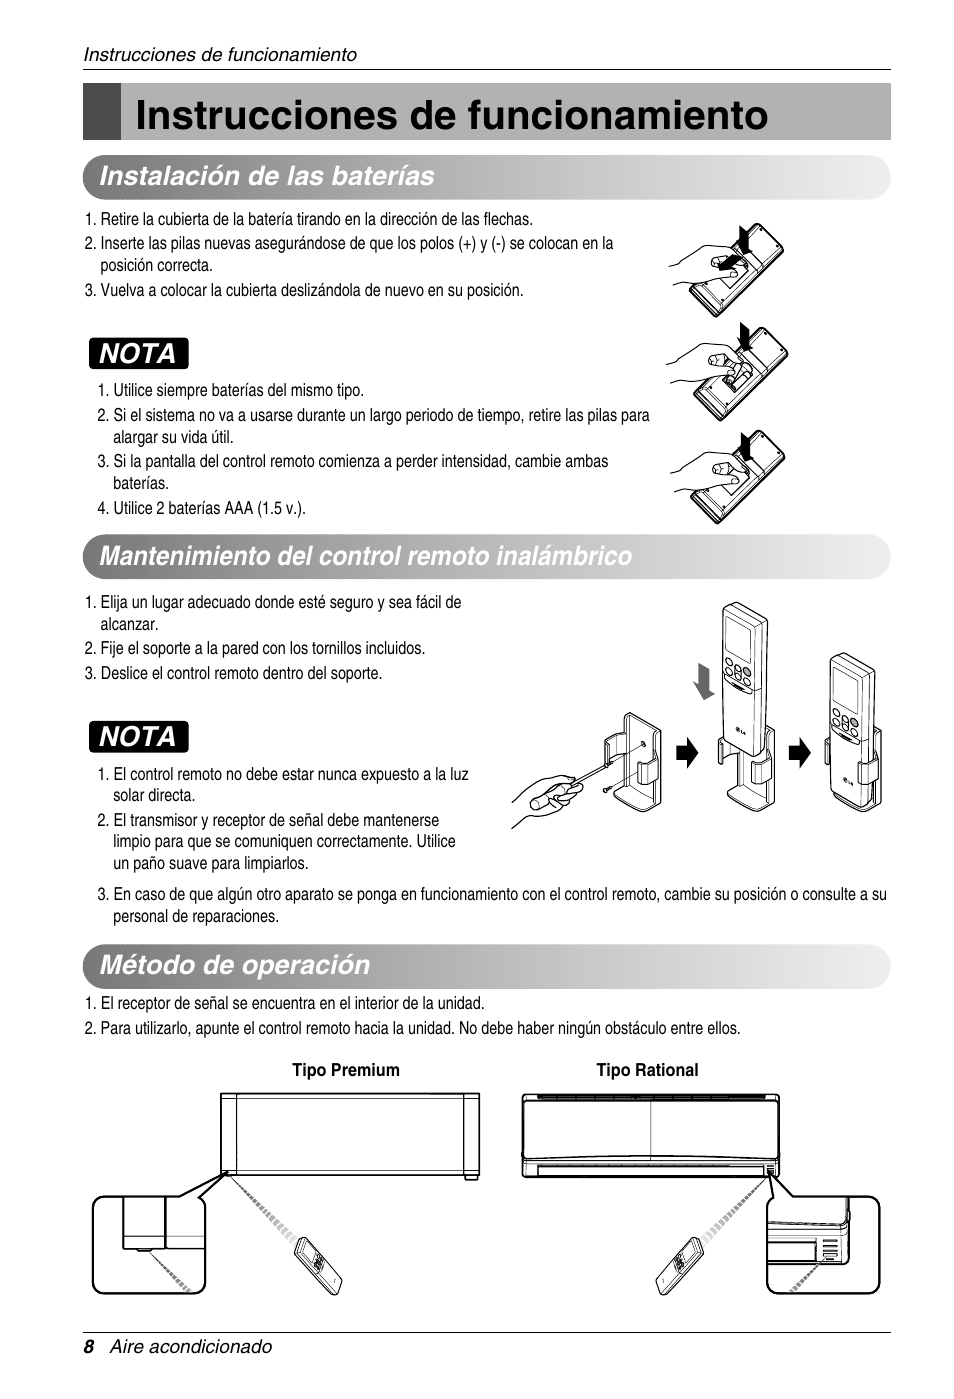 Shuraba pluma Universidad Instrucciones de funcionamiento, Nota, Método de operación | LG ASNW126BMS0  Manual del usuario | Página 8 / 25 | Original